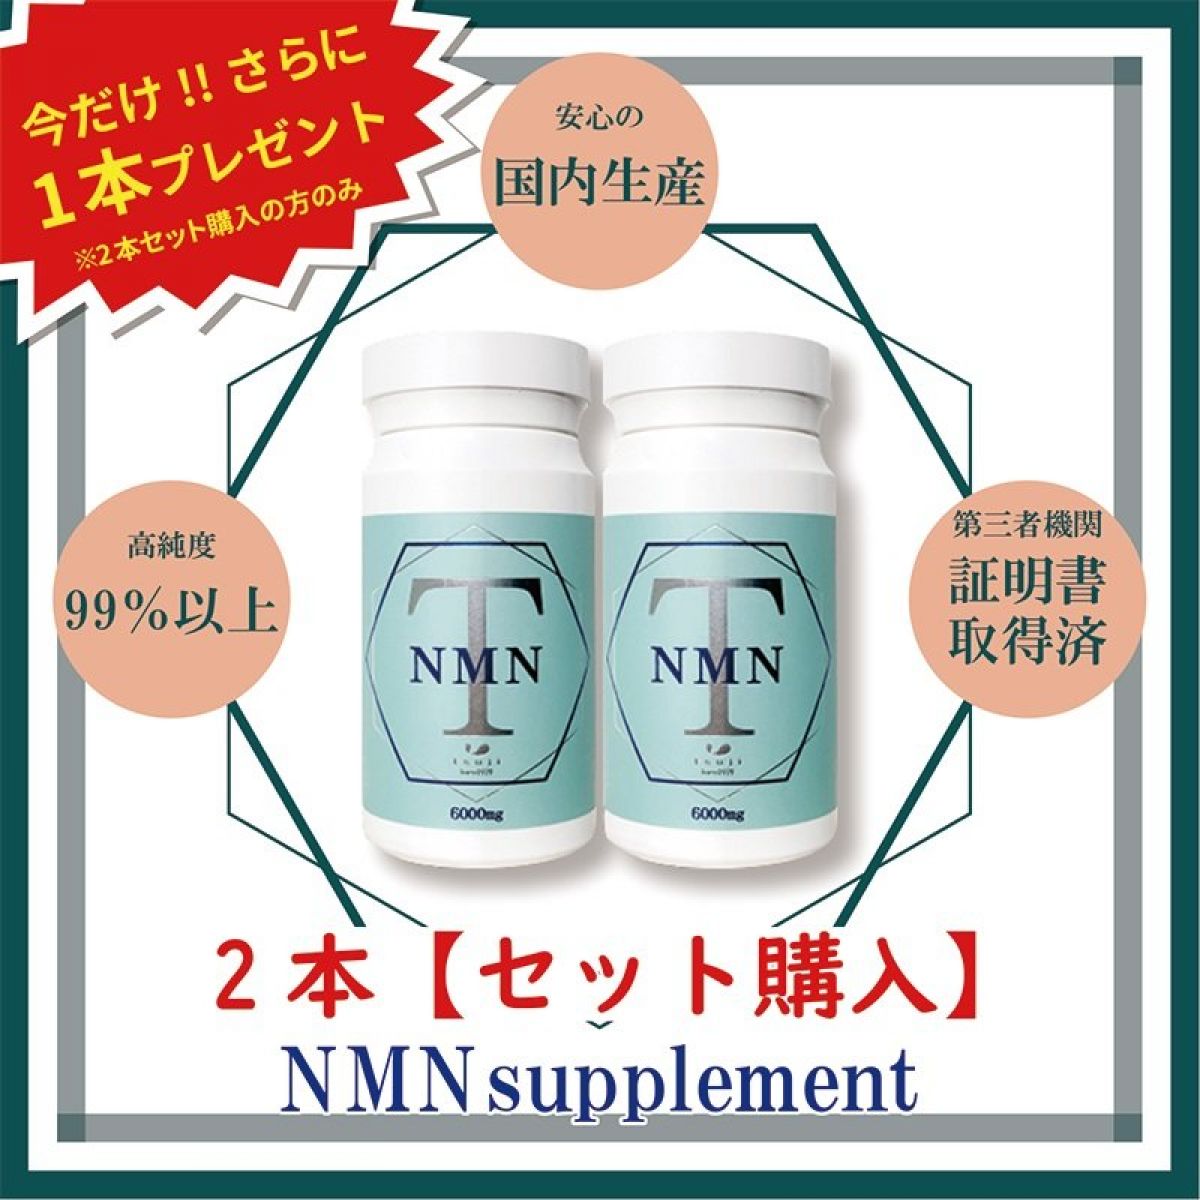 【期間限定商品】NMNサプリメント2個+1個プレゼント【T-NMN 6000mg】